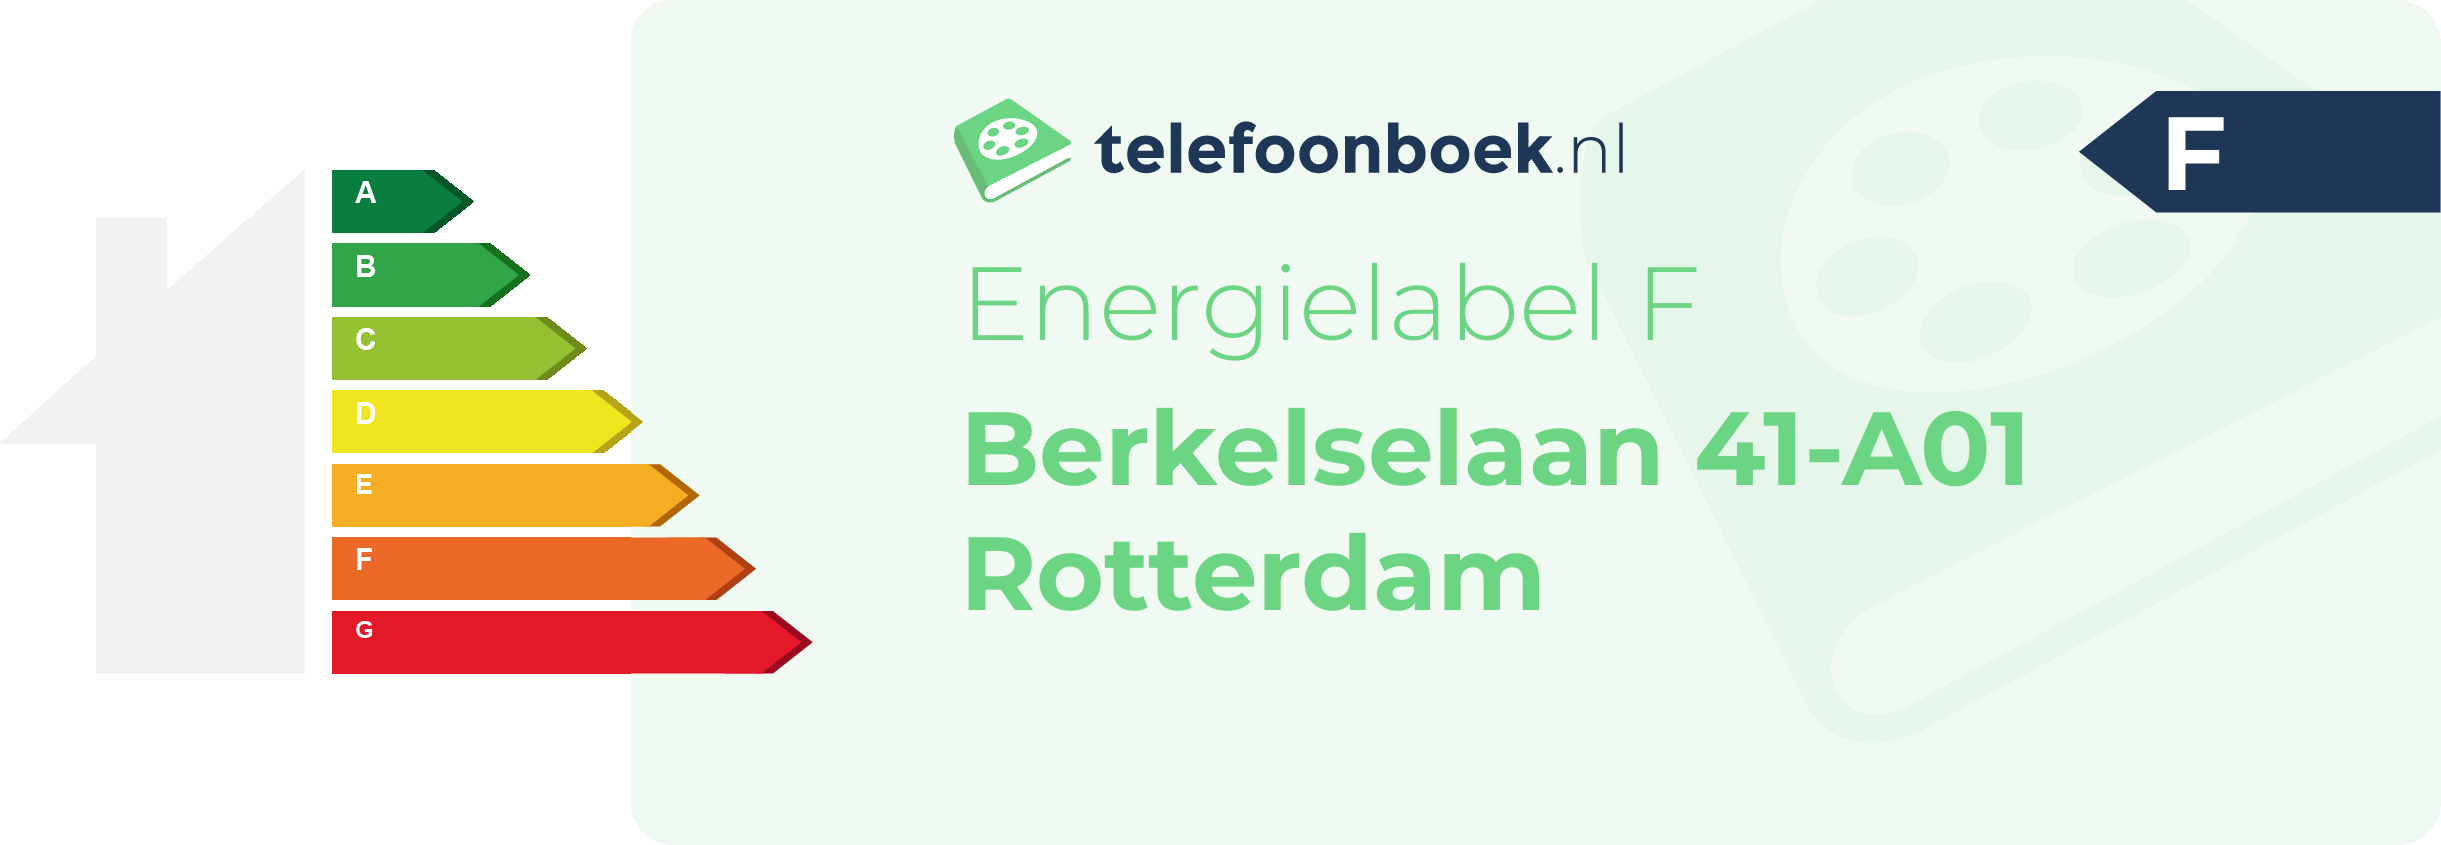 Energielabel Berkelselaan 41-A01 Rotterdam